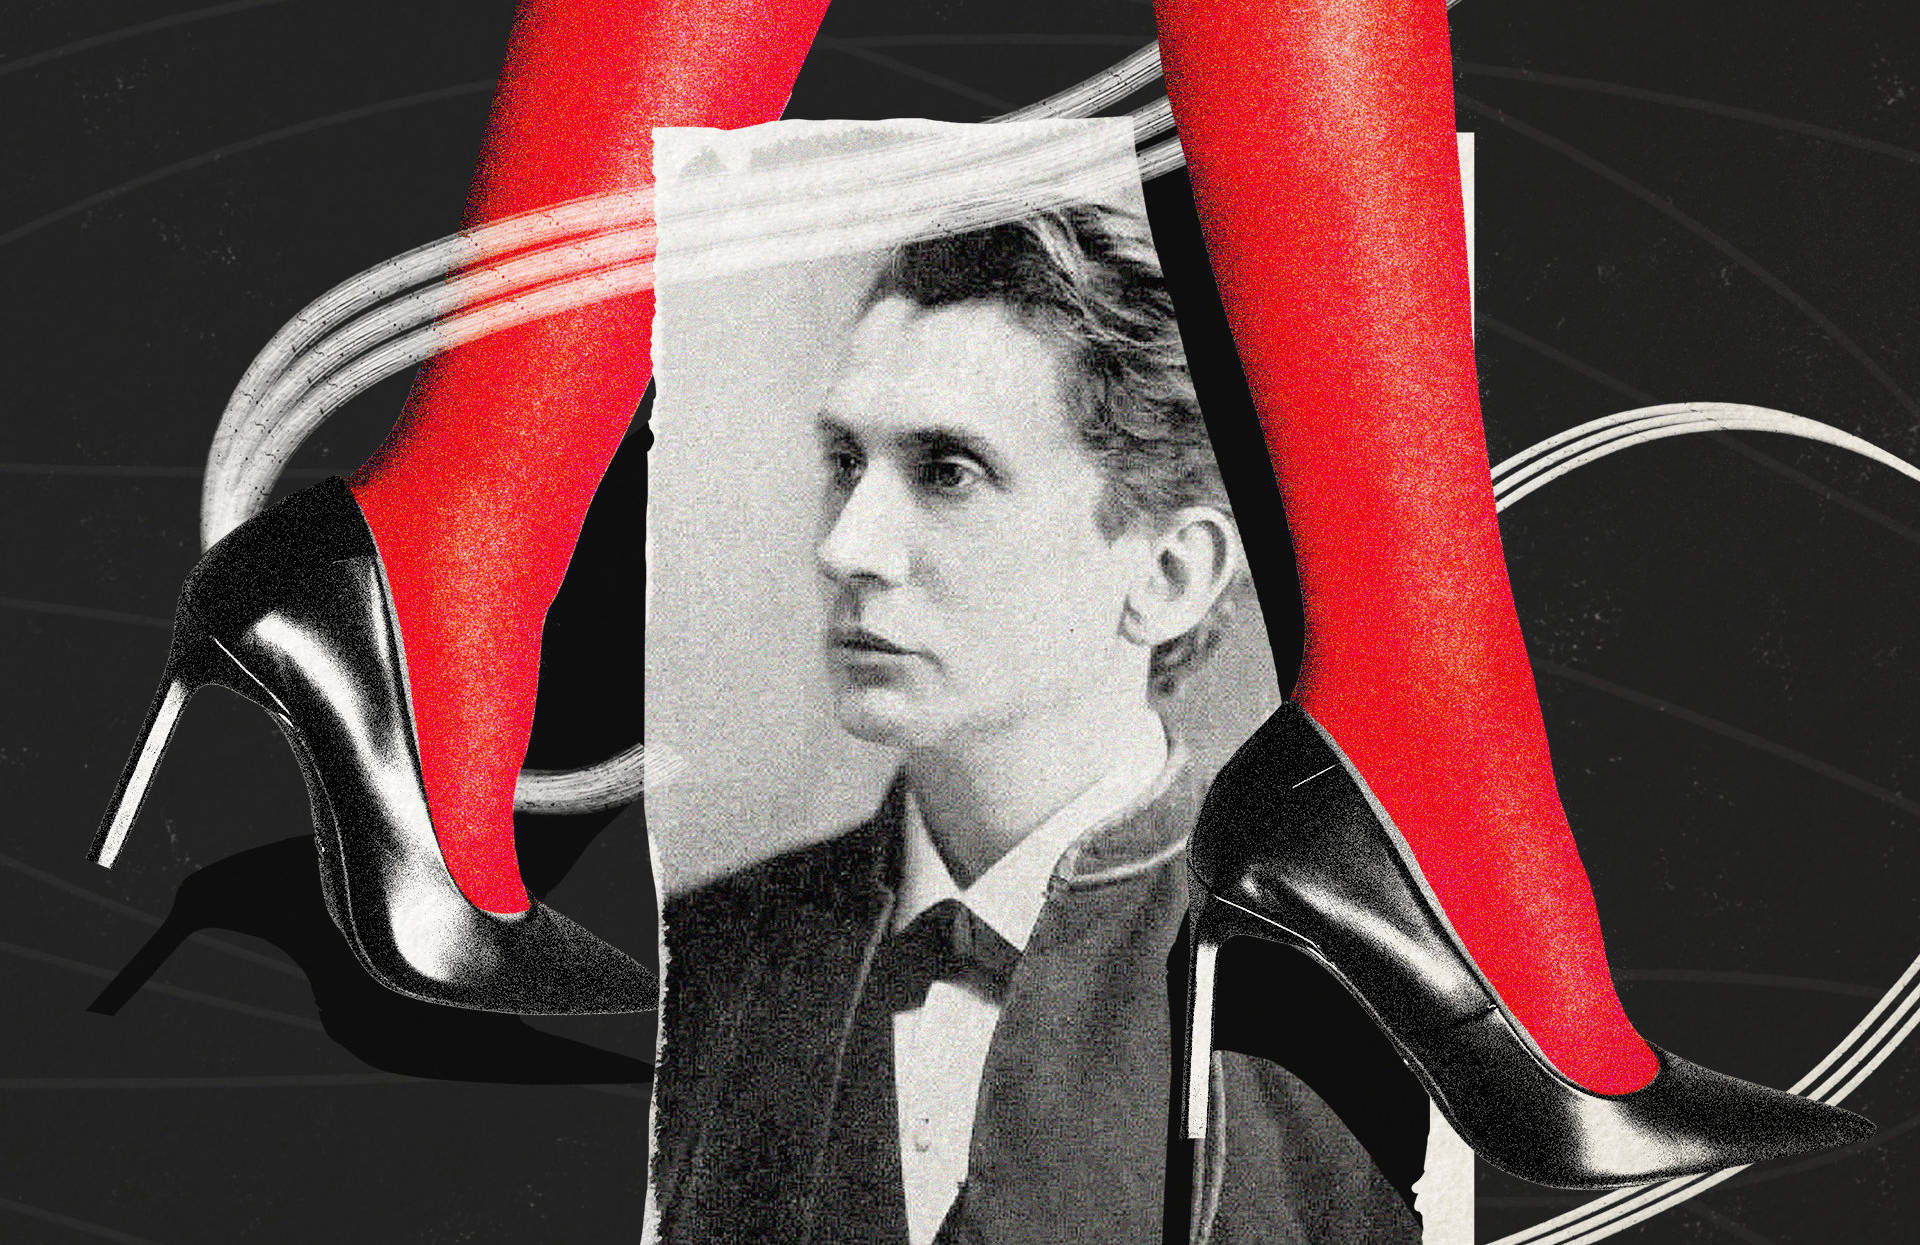 Ilustracja przedstawiająca fotografię Leopolda Schera-Masocha, nad którą widać kobiece nogi w czerwonych pończochach i czarnych szpilkach. Sacher-Masoch